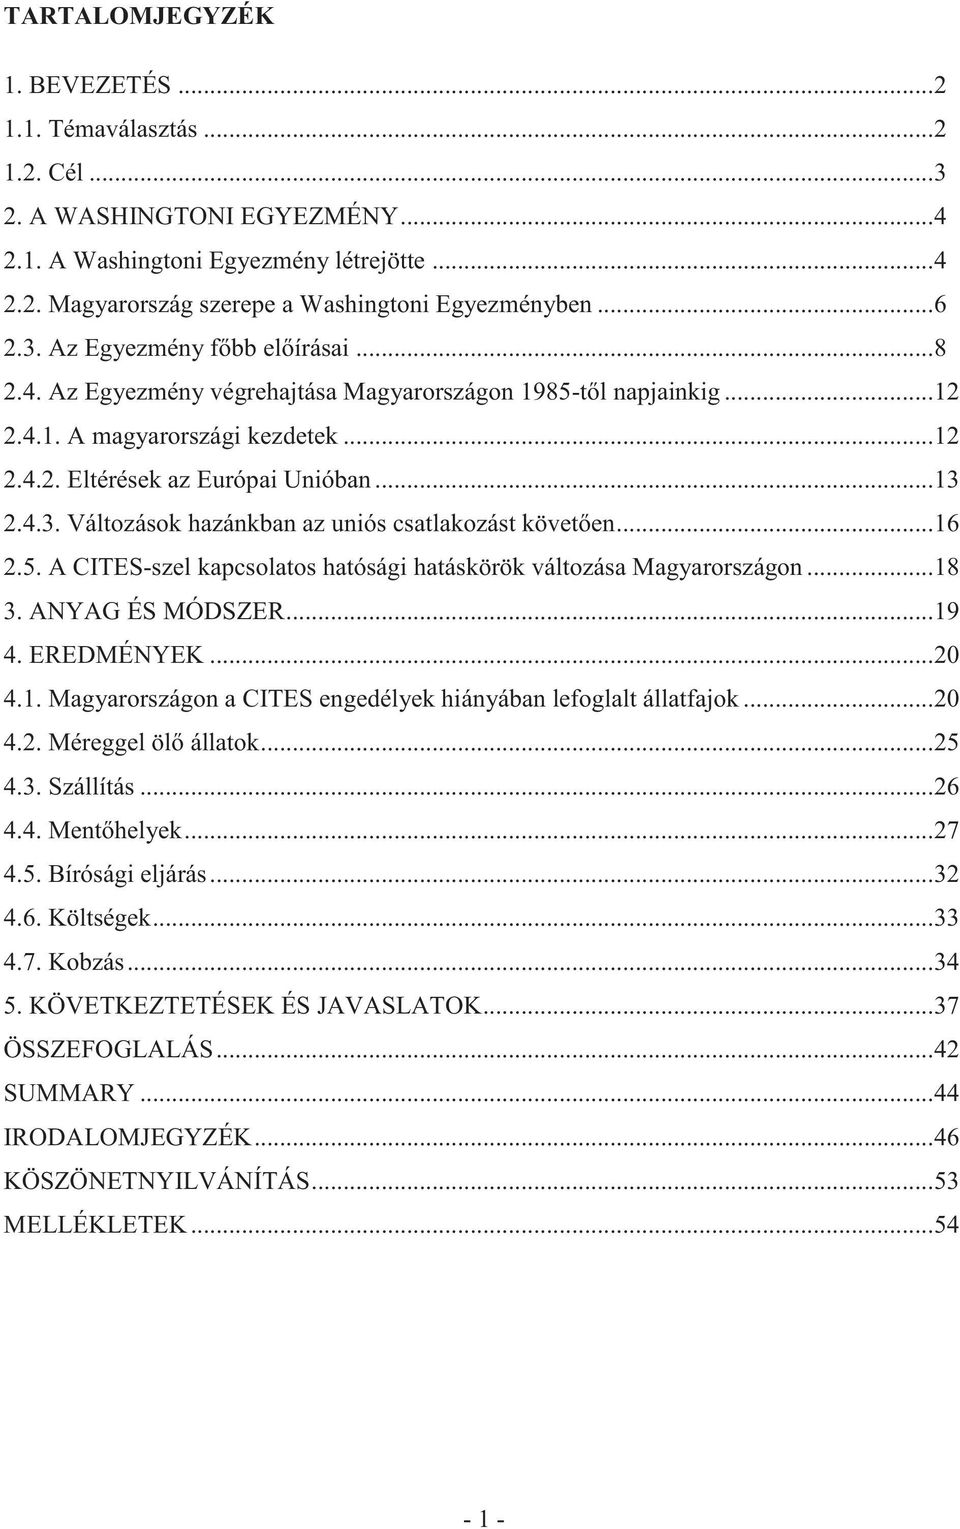 ..16 2.5. A CITES-szel kapcsolatos hatósági hatáskörök változása Magyarországon...18 3. ANYAG ÉS MÓDSZER...19 4. EREDMÉNYEK...20 4.1. Magyarországon a CITES engedélyek hiányában lefoglalt állatfajok.